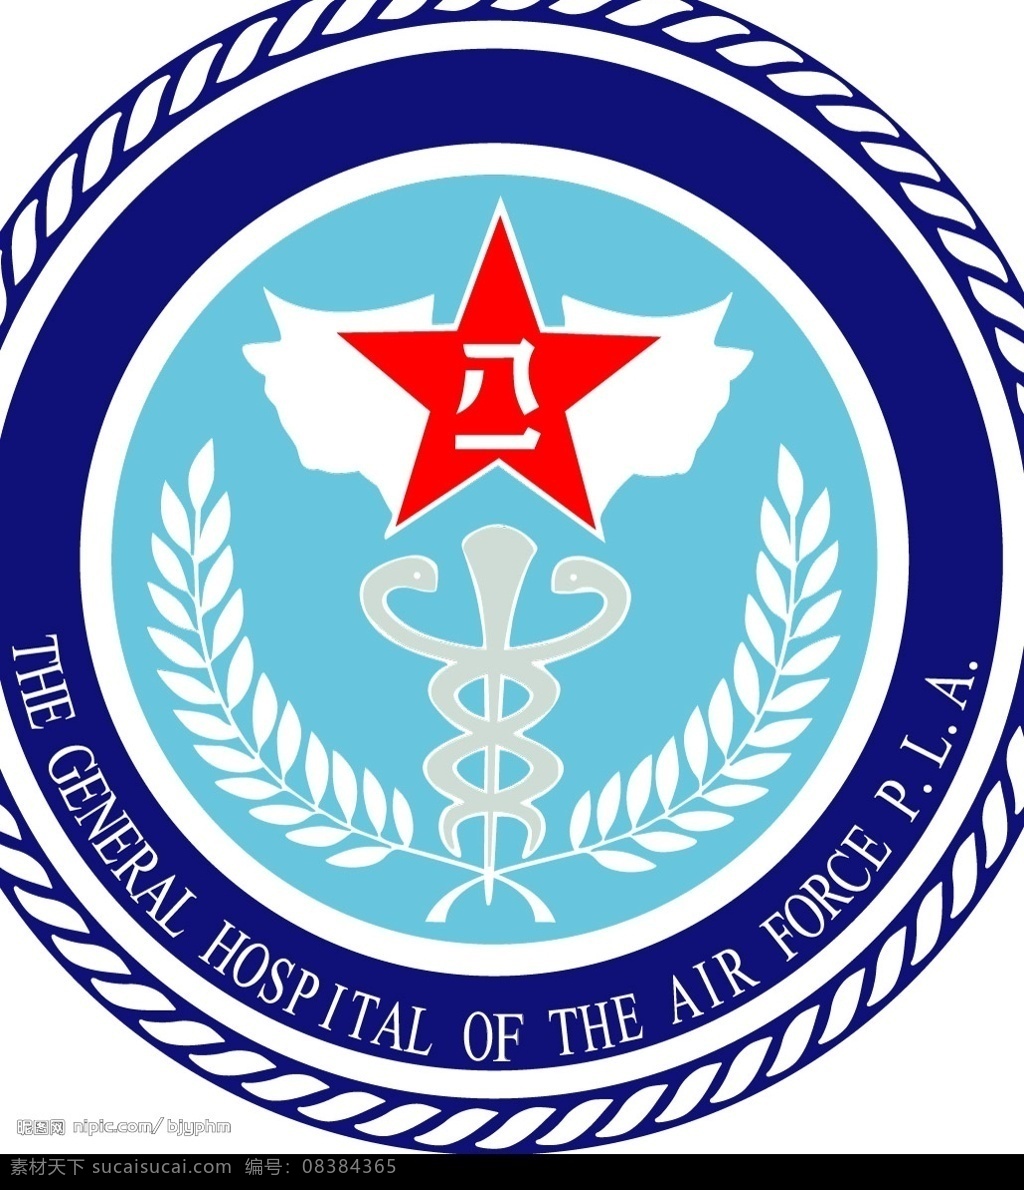 空军 总医院 标志 标识标志图标 企业 logo 矢量图库